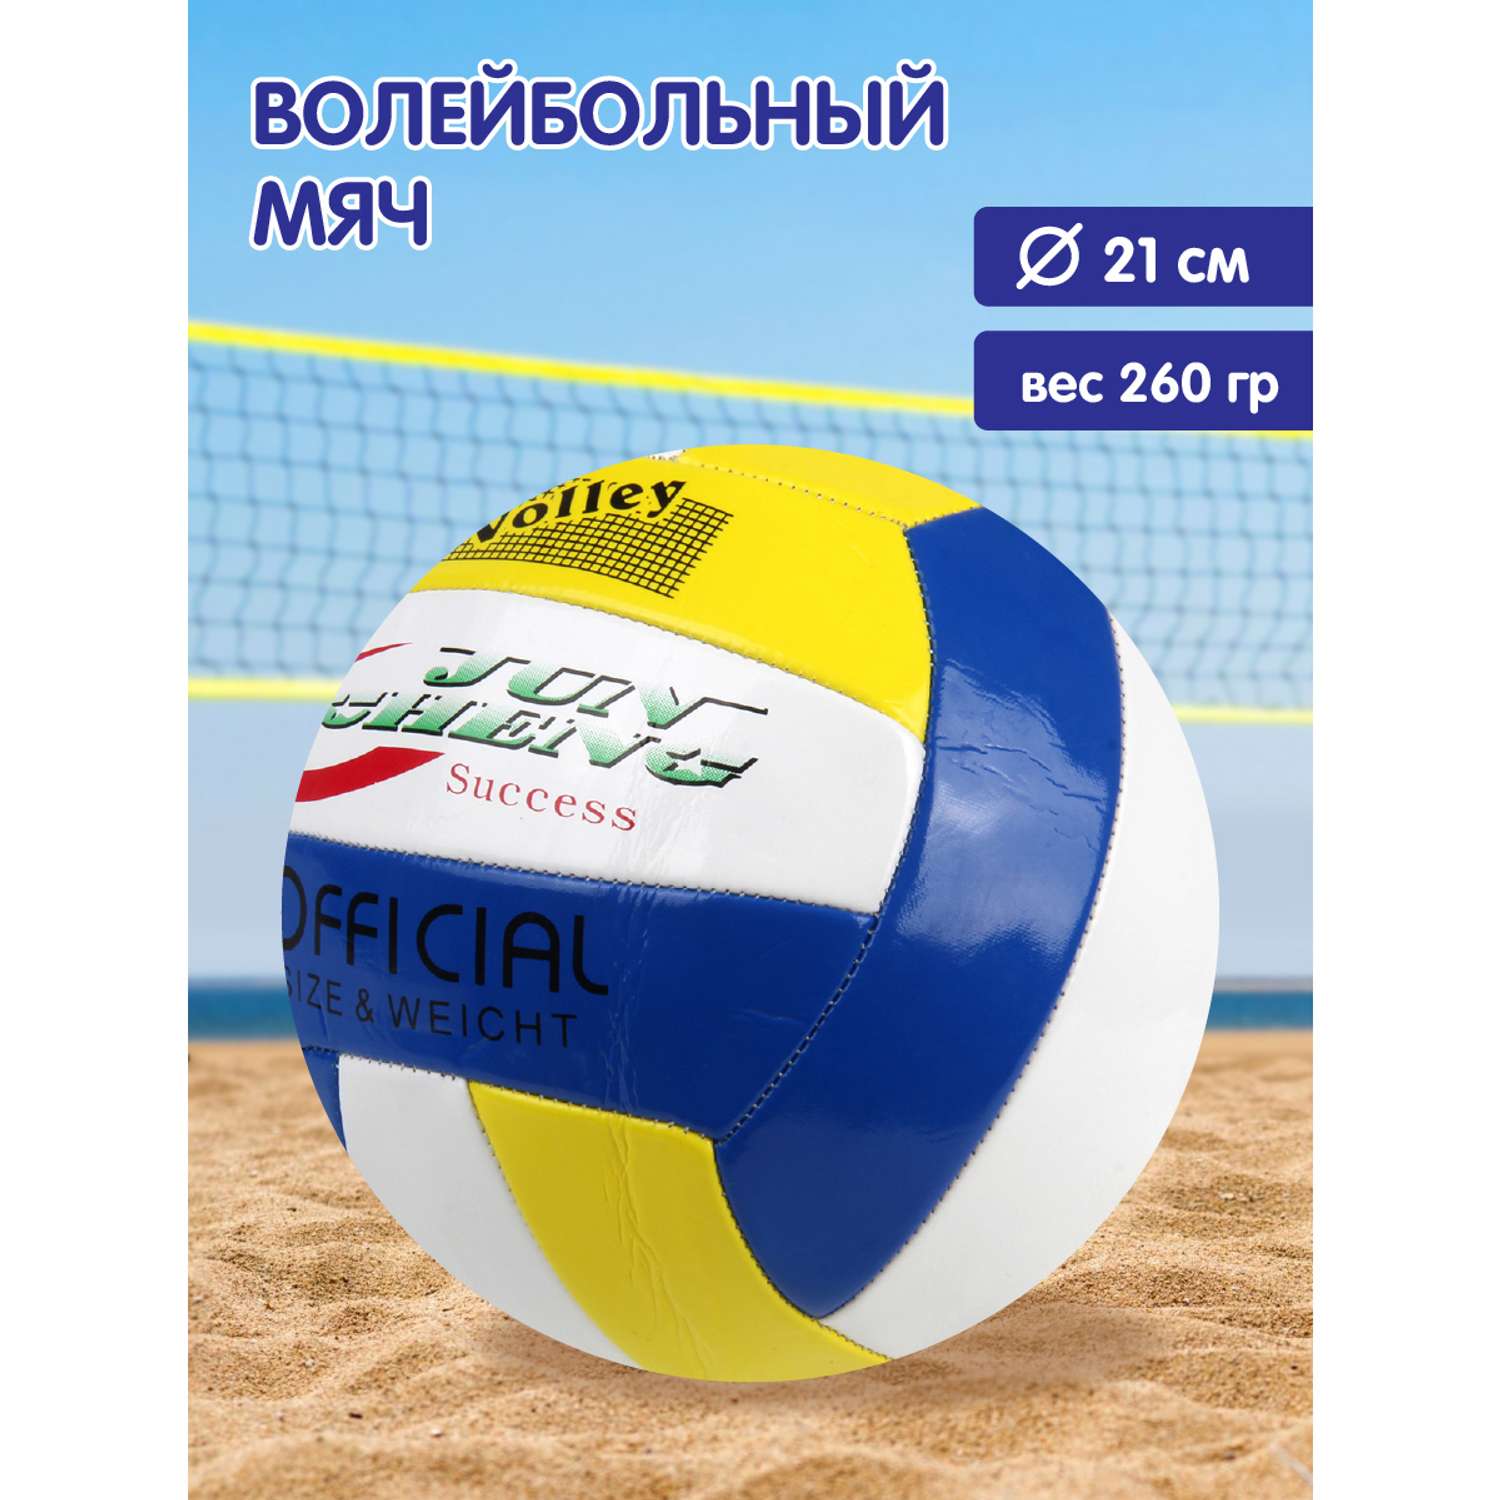 Мяч Veld Co волейбольный 21 см - фото 1